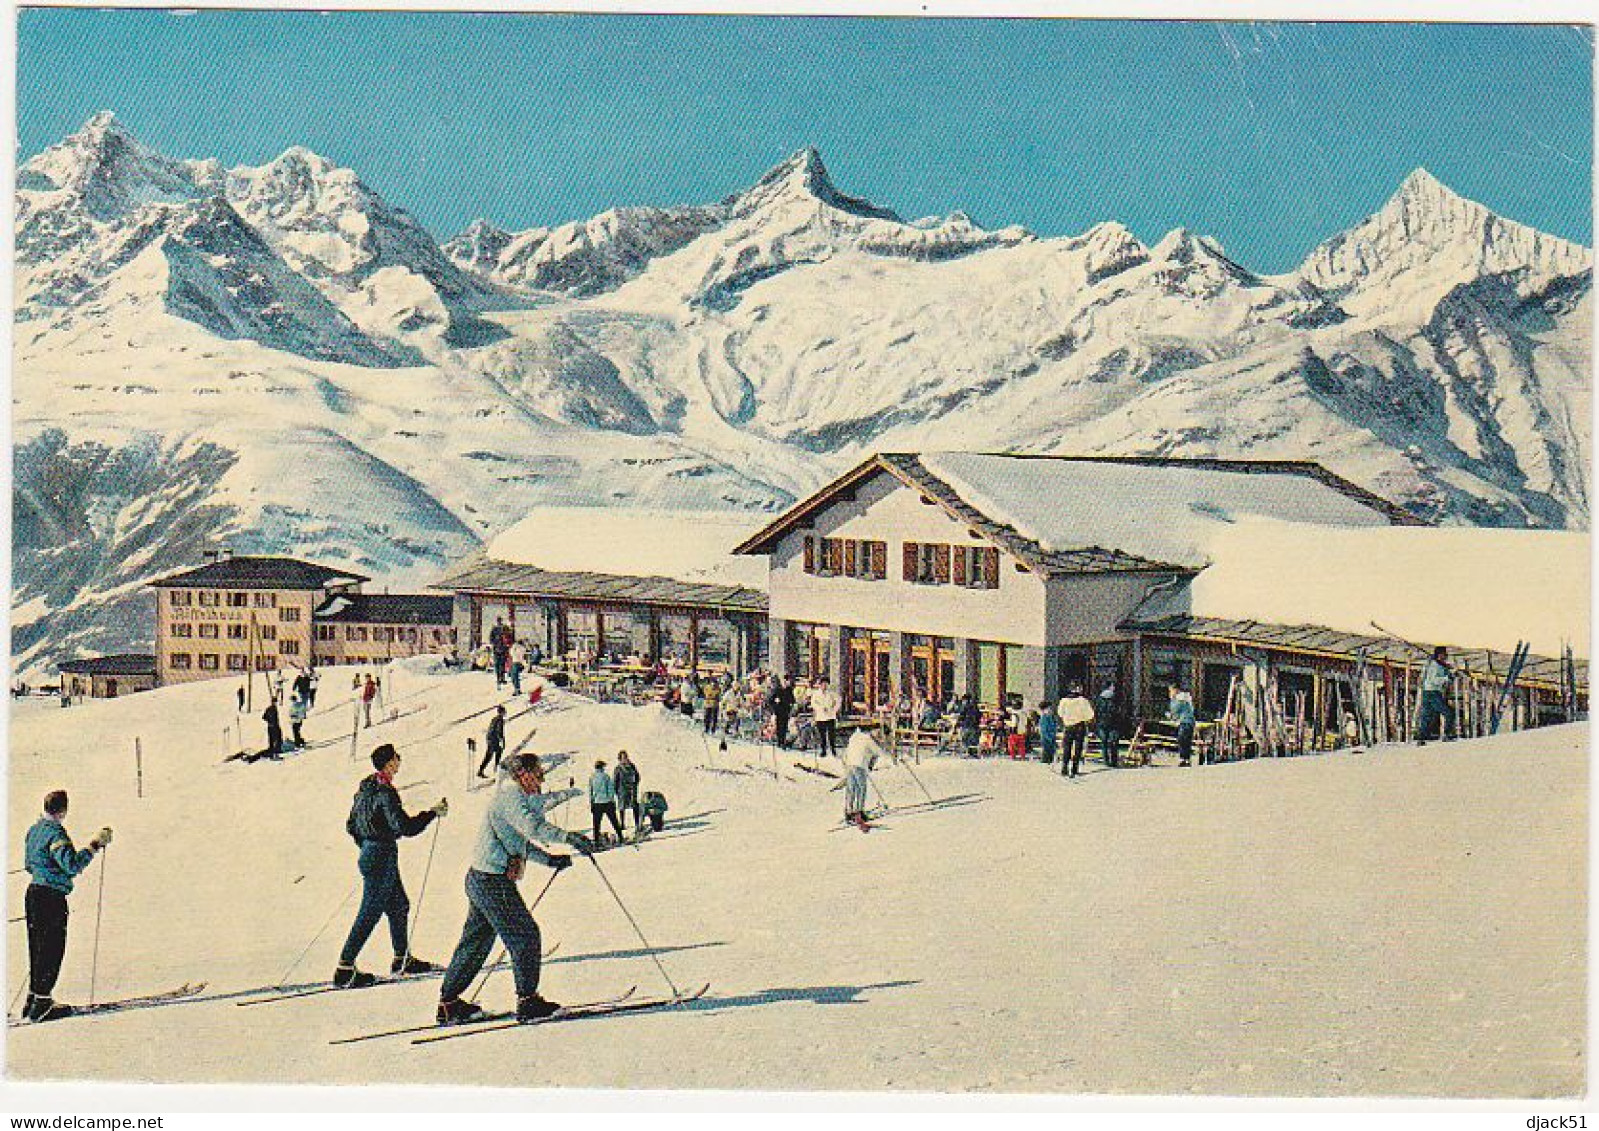 Suisse / Restaurant Riffelberg - 1968 - Timbre / Stamp : Tournoi Olympique D'Echecs 1968 - Berg